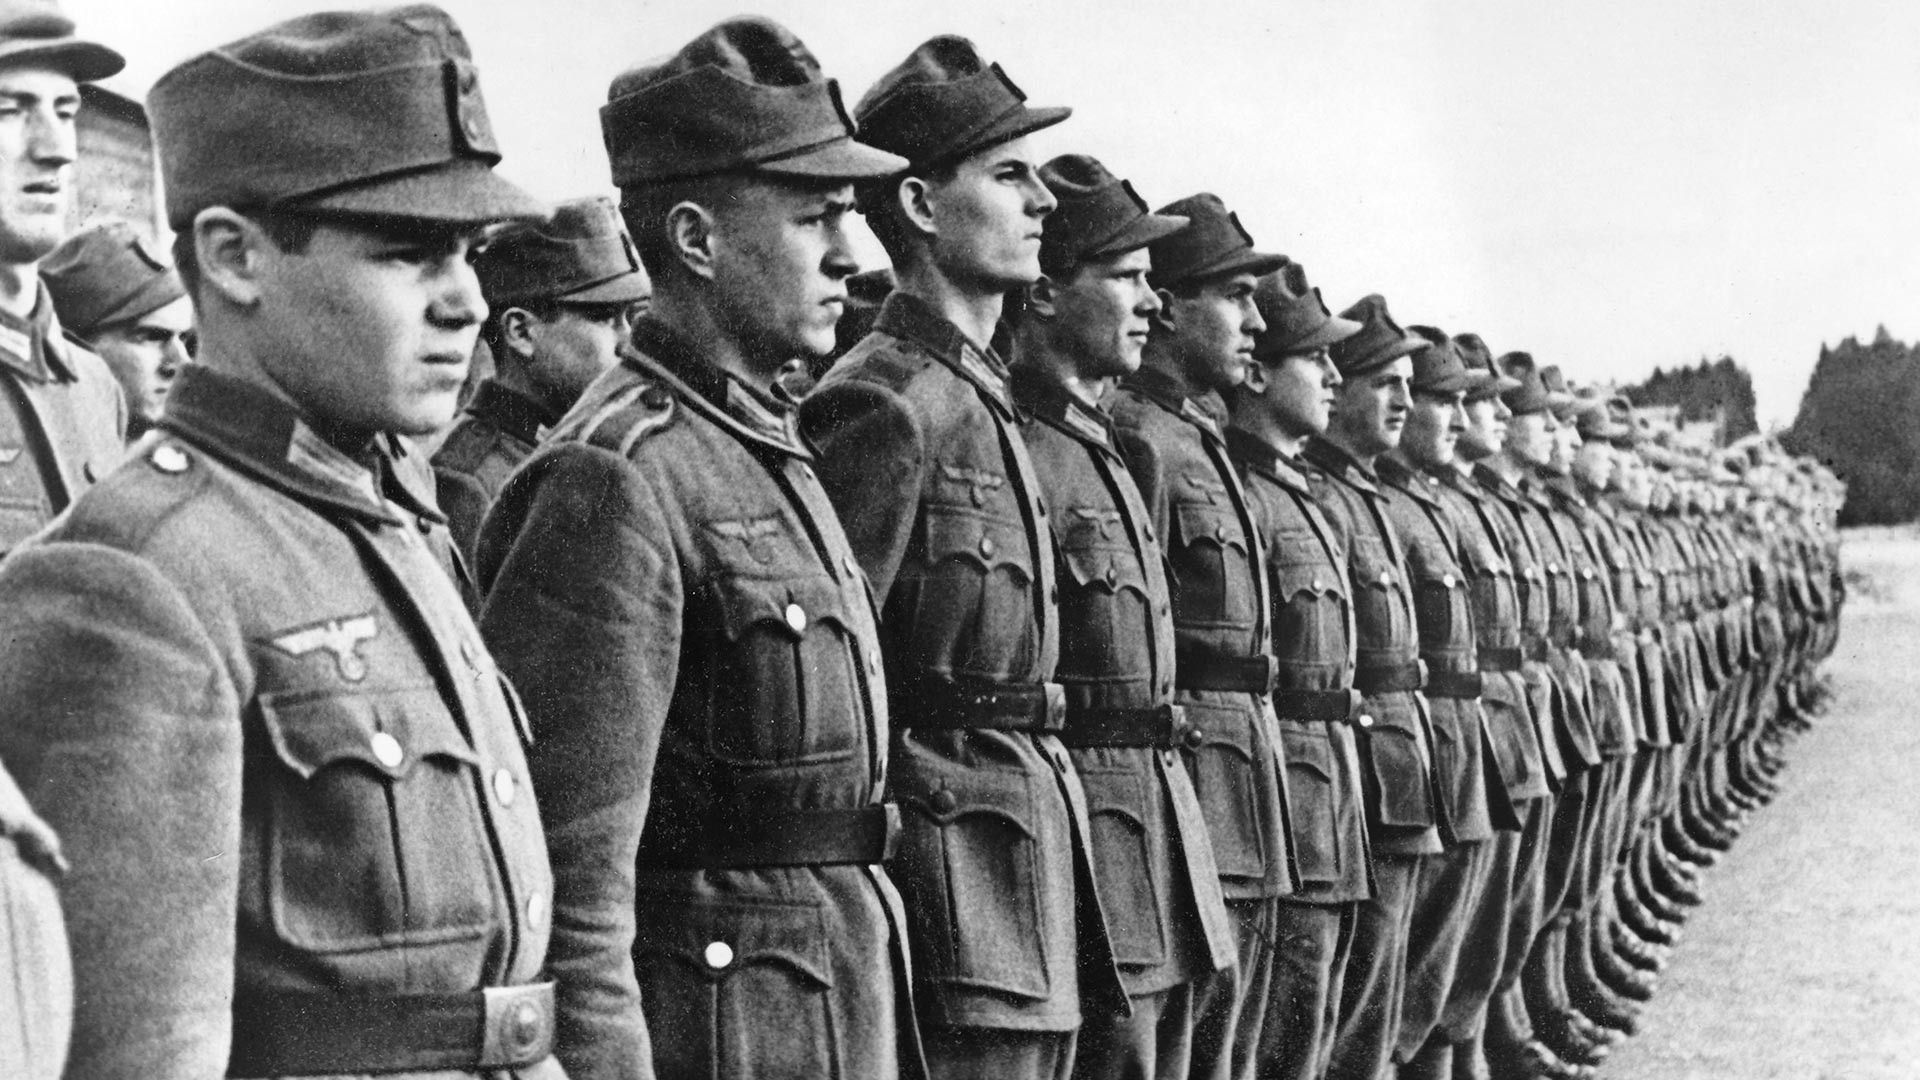 Втора светска војна, Хрватска легија во 1942 година. Нацистичката пропаганда ги прикажува хрватските доброволци кои поминуваат обука за прием во Вермахтот. Фотографијата е направена во јануари 1942 година.